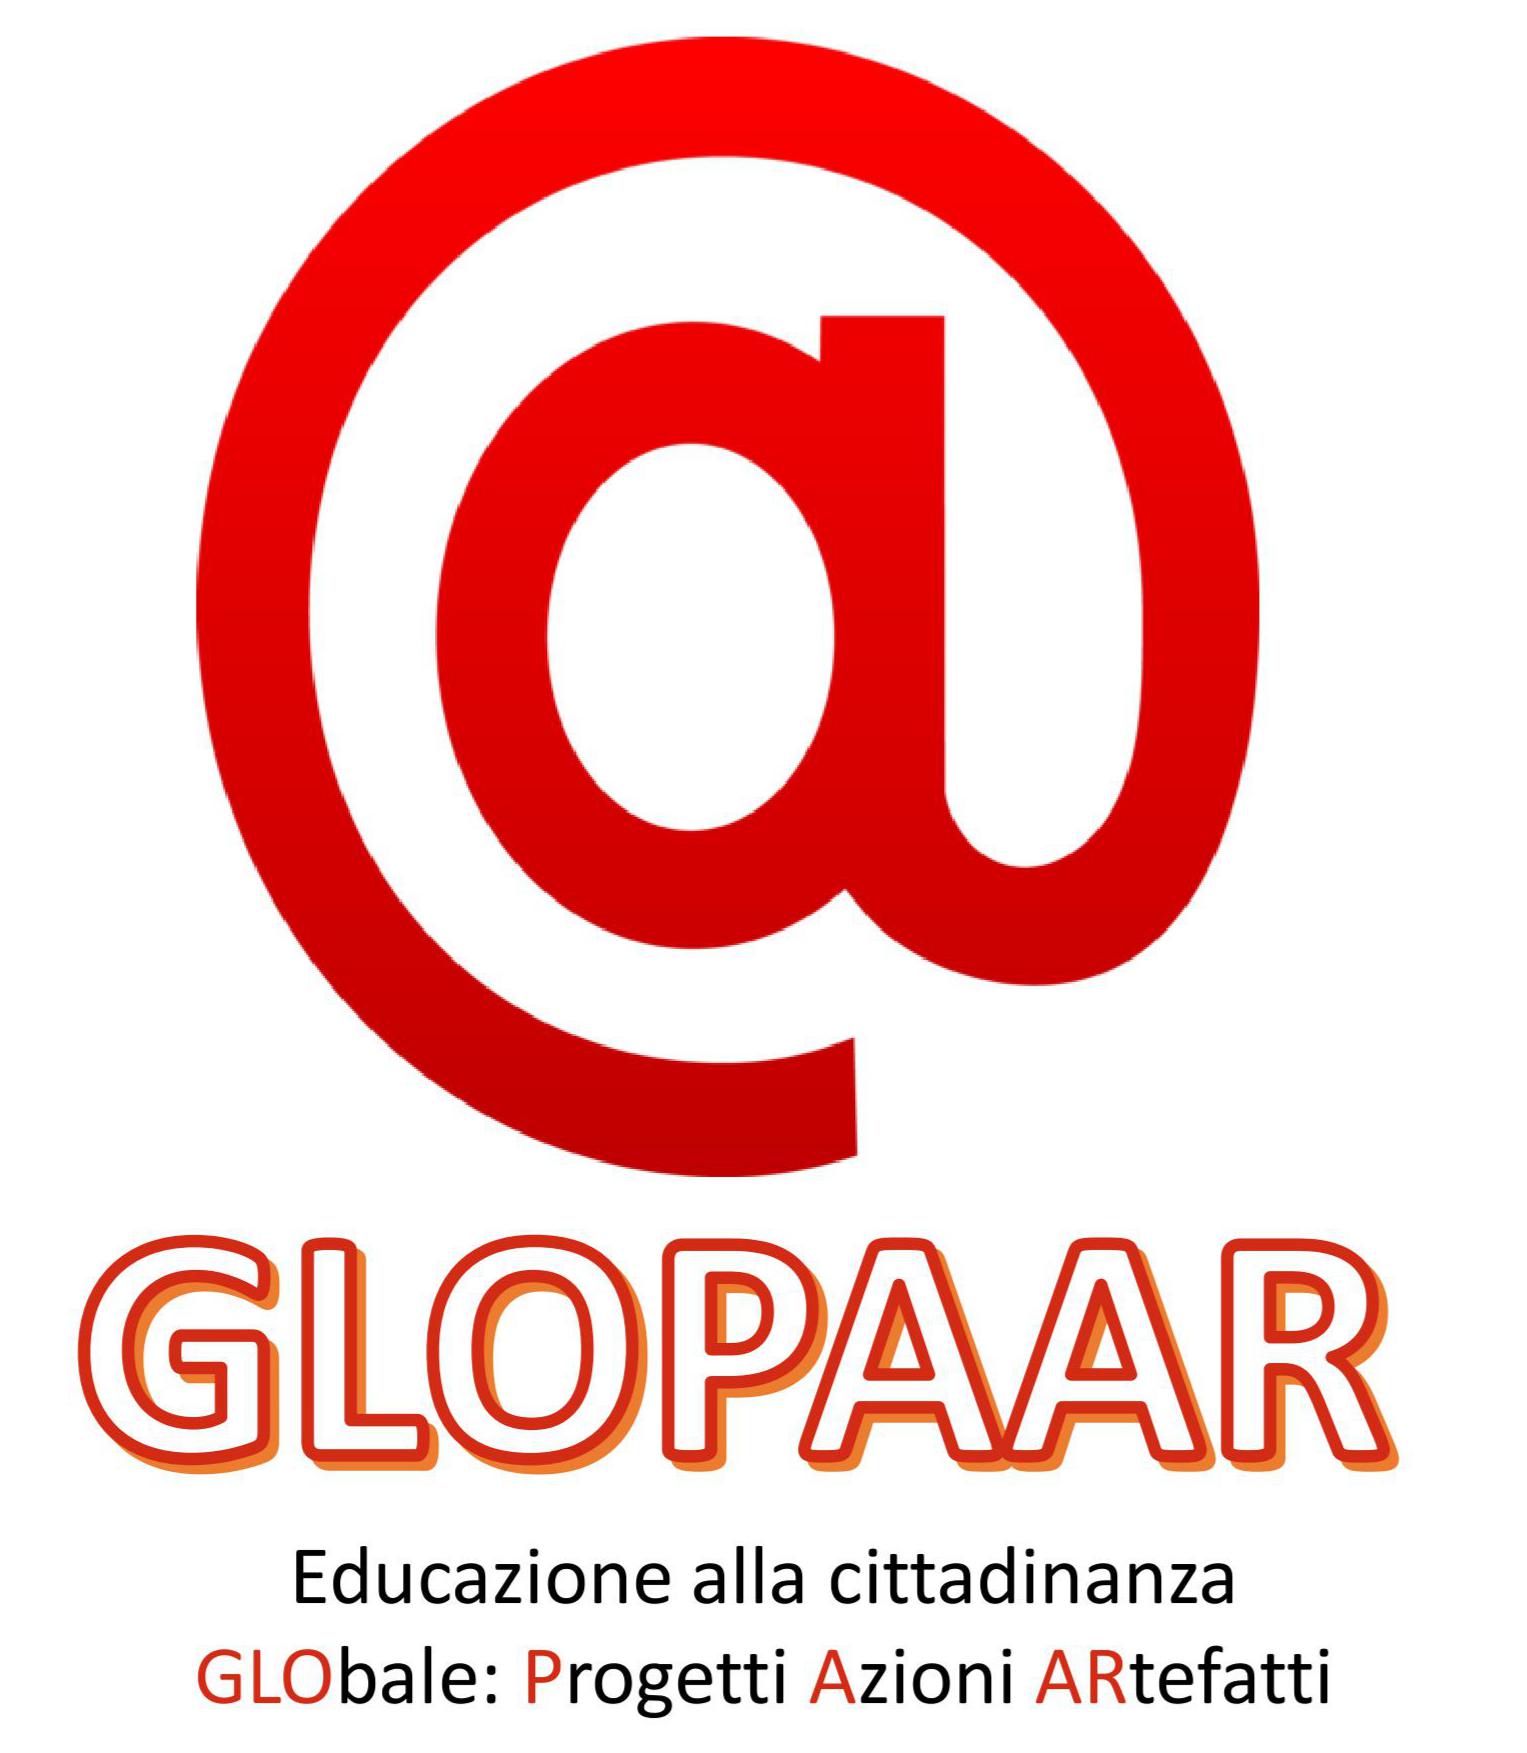 GLOPAAR: Educazione alla cittadinanza GLObale: Progetti Azioni ARtefatti